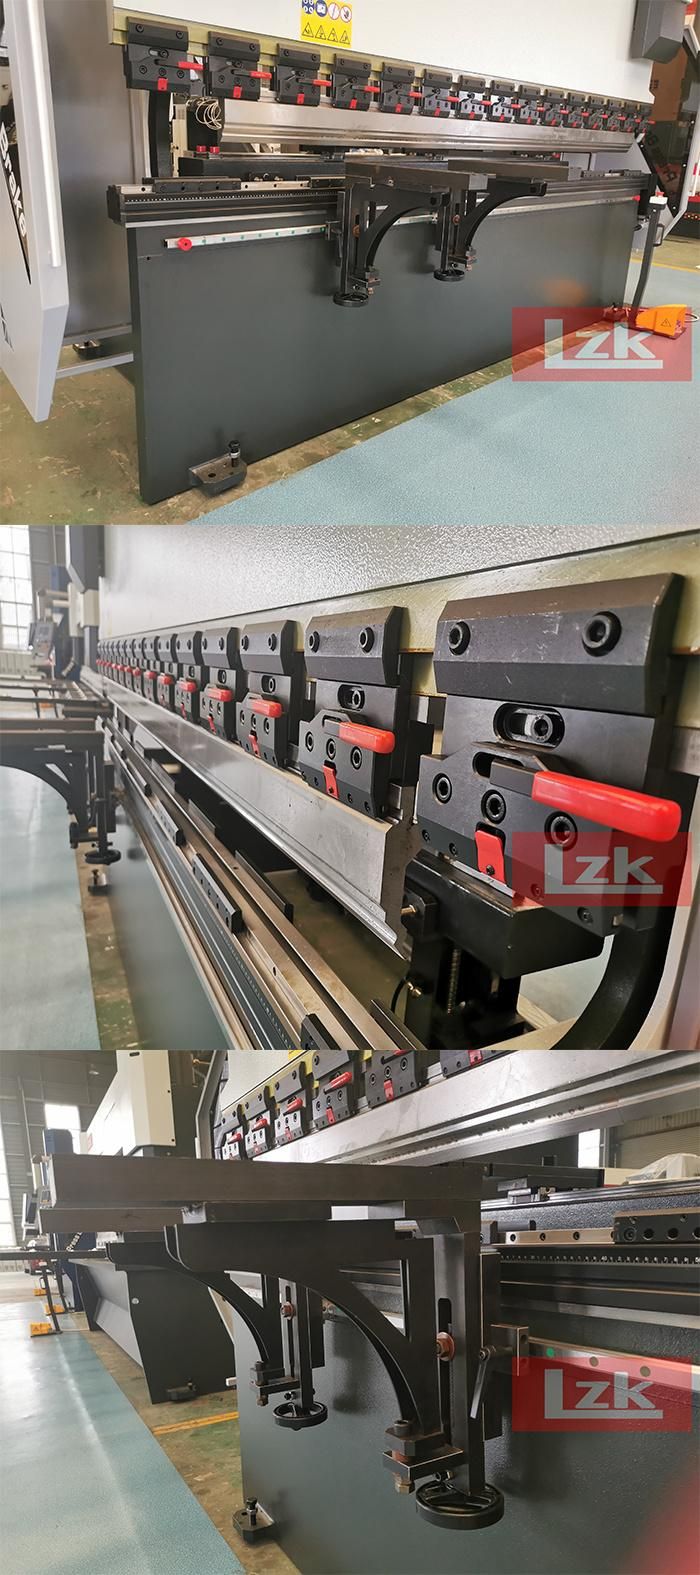 Hpb 110t3200 Hydraulic Metal Press Folder From Lzk